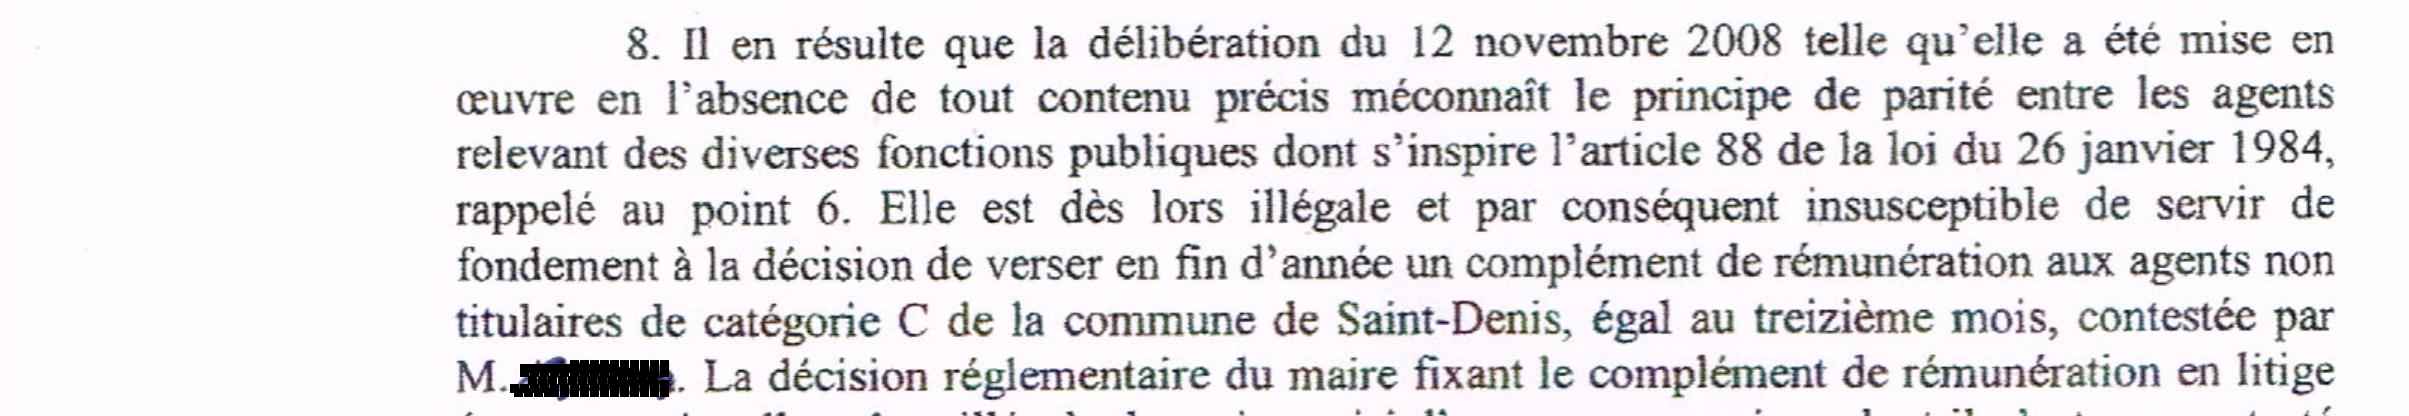 Saint-Denis: Le 13e mois accordé aux non-titulaires est jugé illégal par la cour administrative de Bordeaux